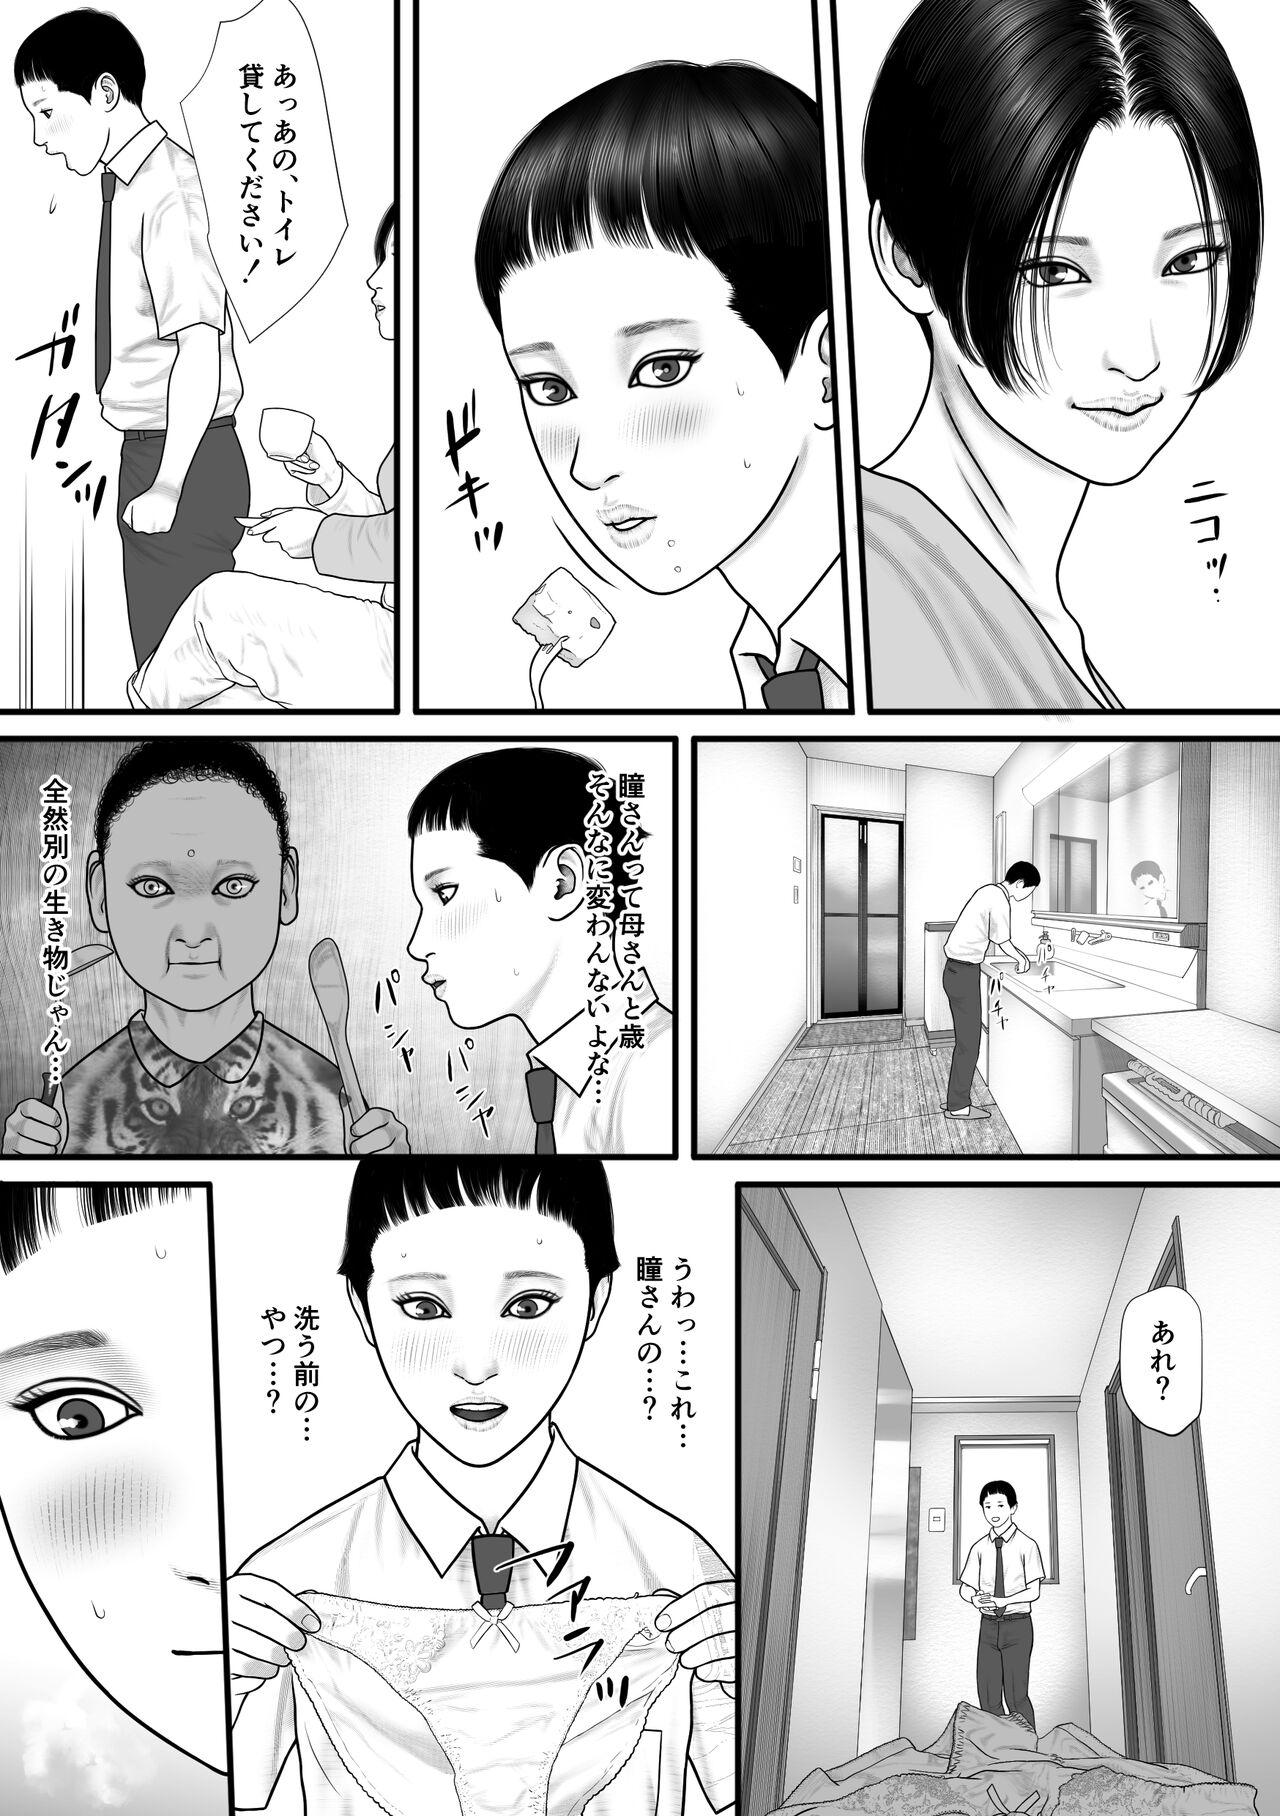 Office Hitomi no Game - Original Tats - Page 5